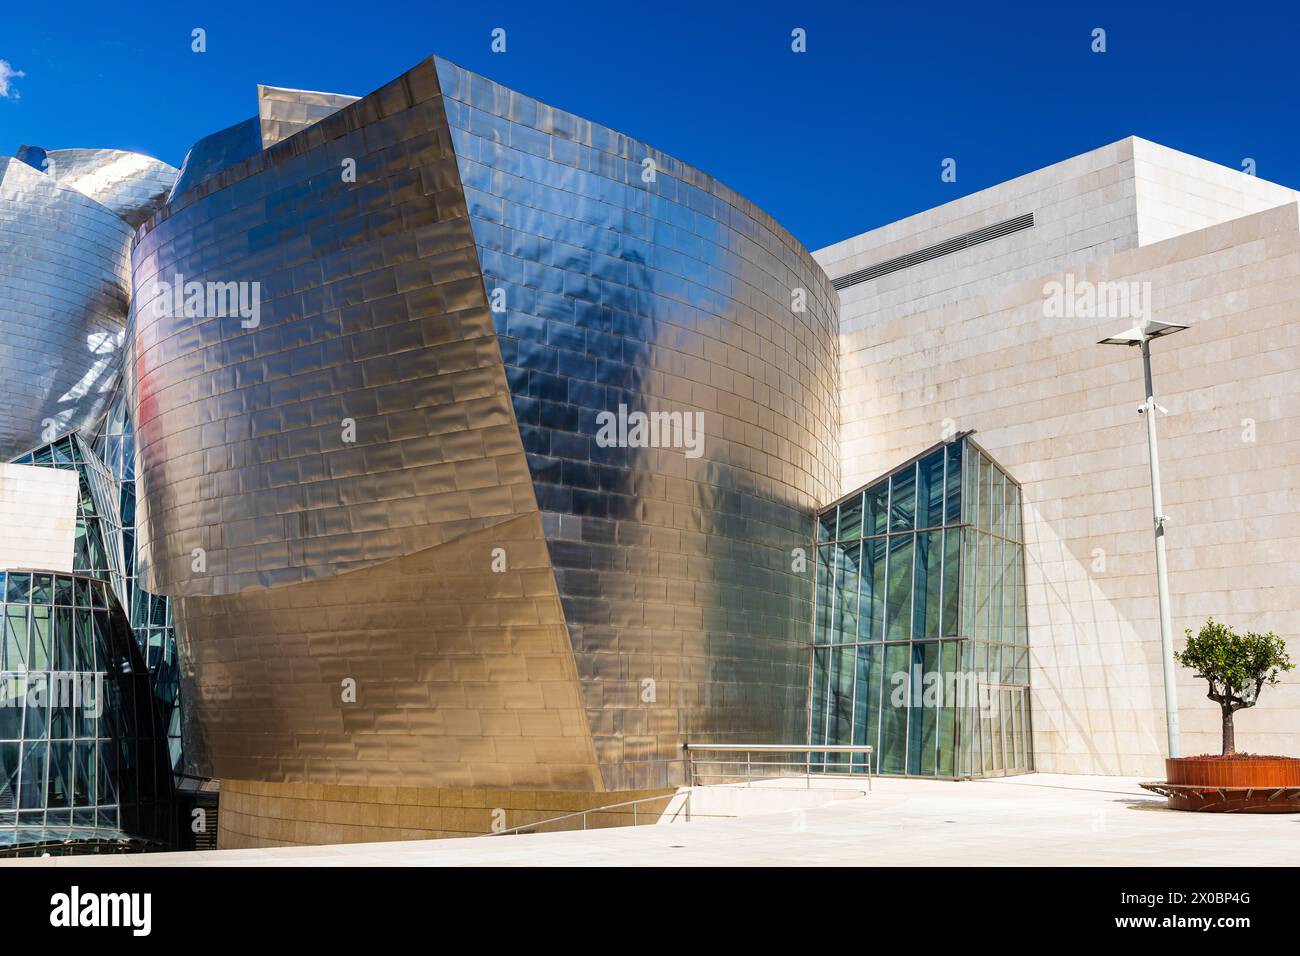 Außenansicht des Guggenheim Museums mit avantgardistischer Architektur, die sich durch fließende Kurven und glatte metallische Oberflächen auszeichnet. Bilbao, Spanien. Stockfoto